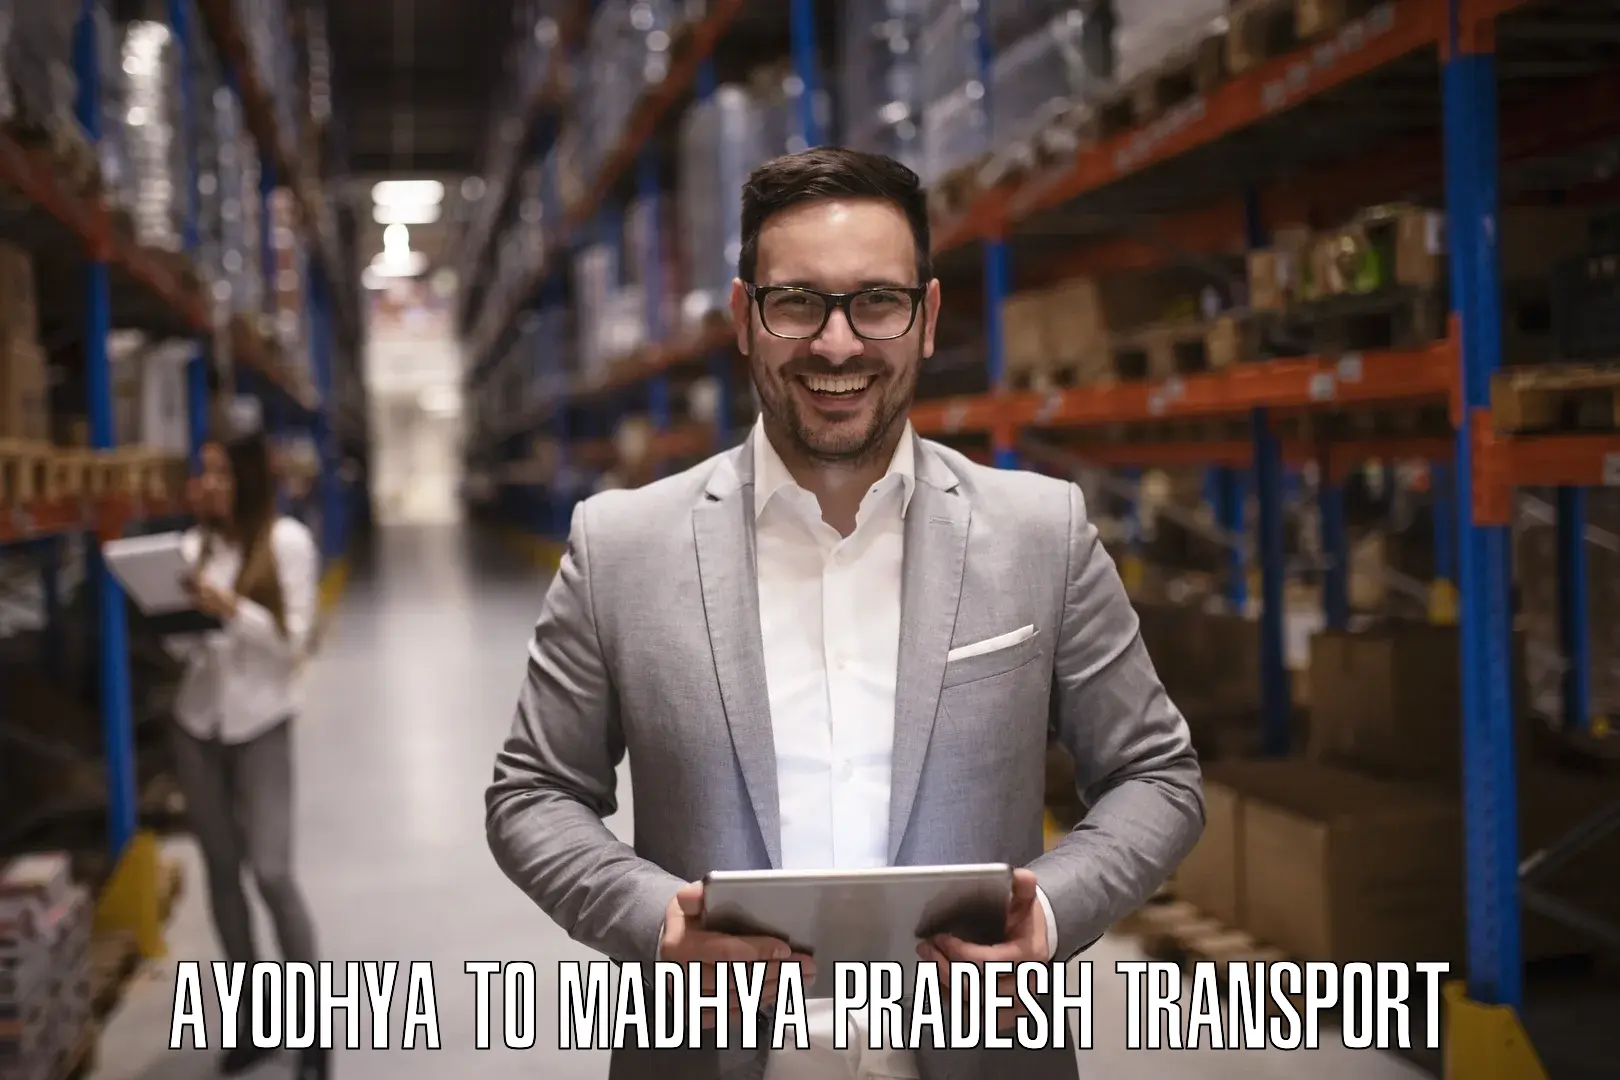 Road transport services Ayodhya to Madhya Pradesh